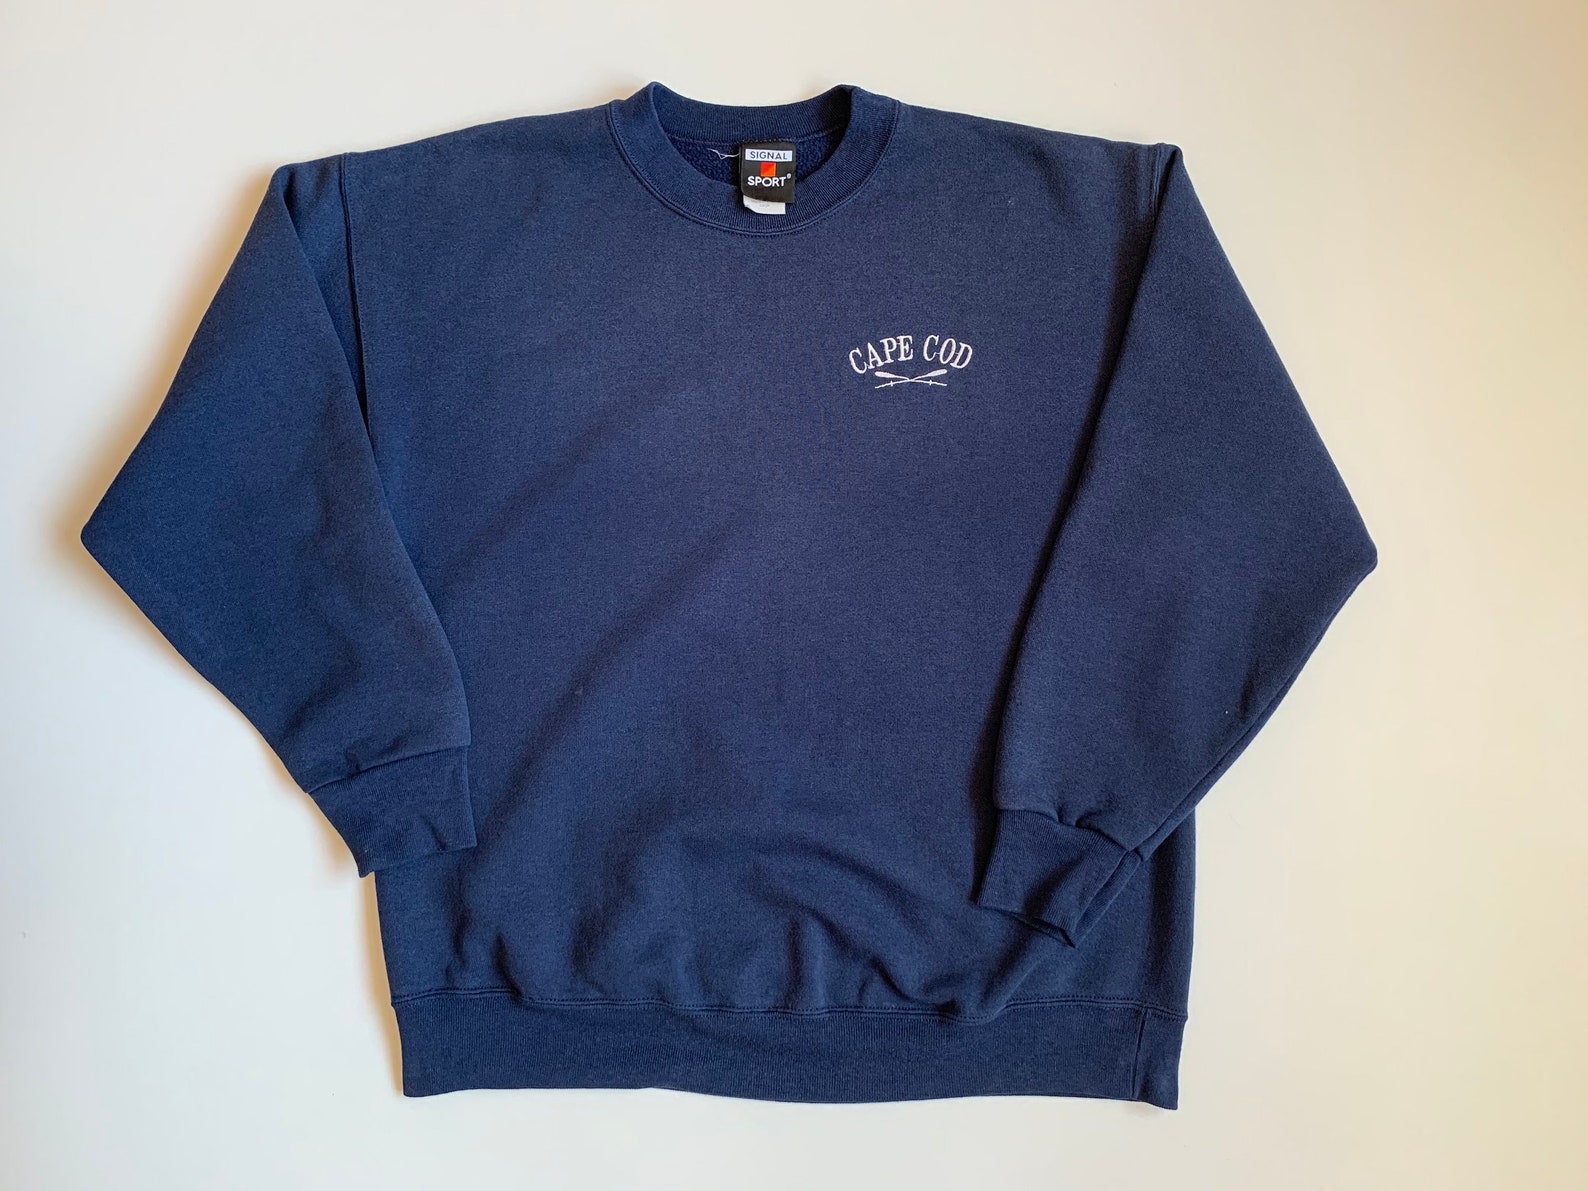 90s Vintage Cape Cod Massachusetts Men's Sweatshirt Size | Etsy